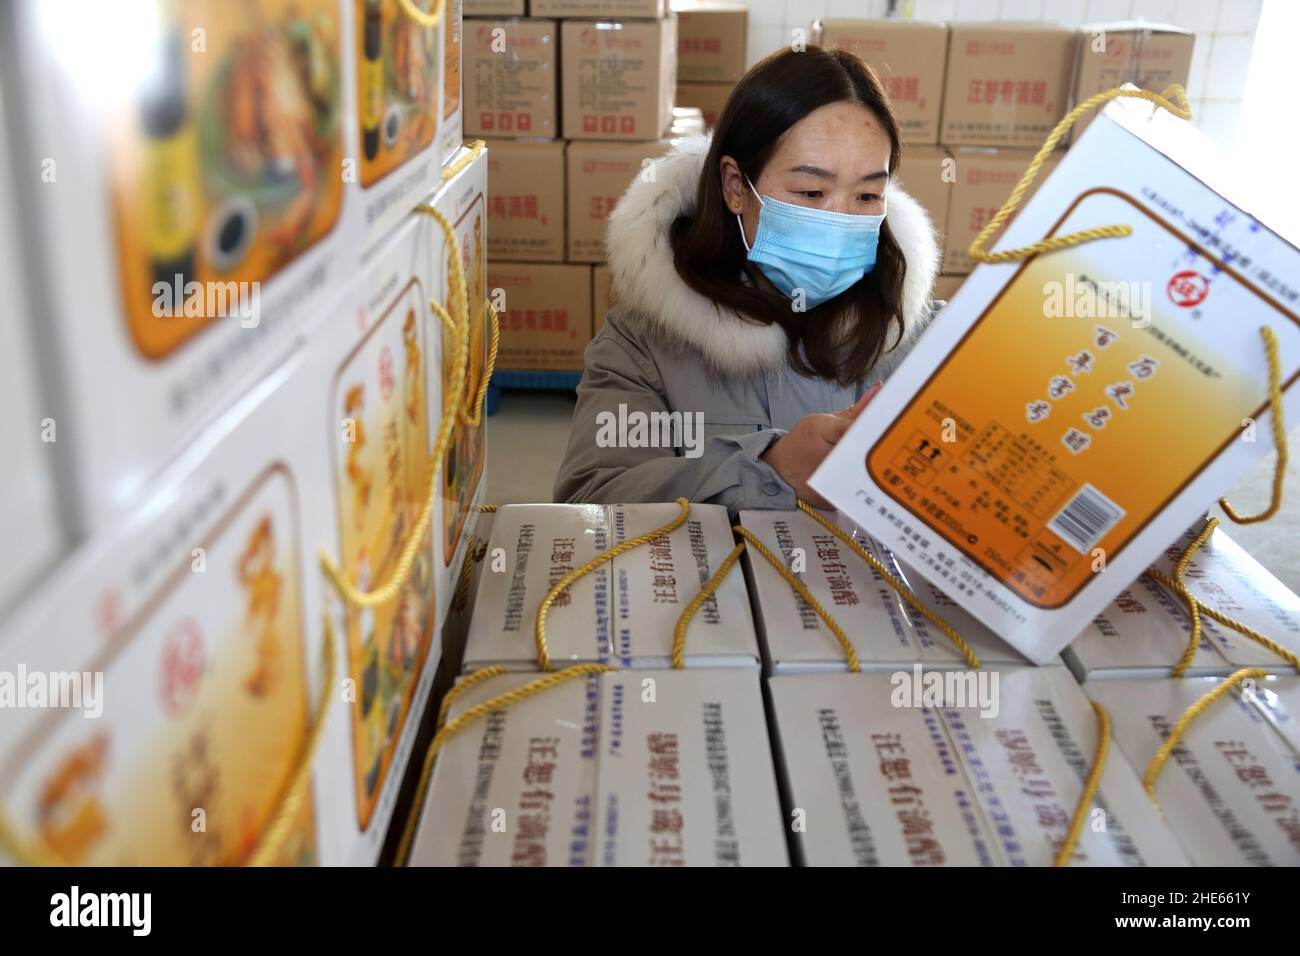 LIANYUNGANG, CHINE - le 9 JANVIER 2022 - les travailleurs vérifient l'emballage du vinaigre dans une usine de vinaigre située dans la ville de Lianyungang, dans la province de Jiangsu, en Chine orientale. Banque D'Images